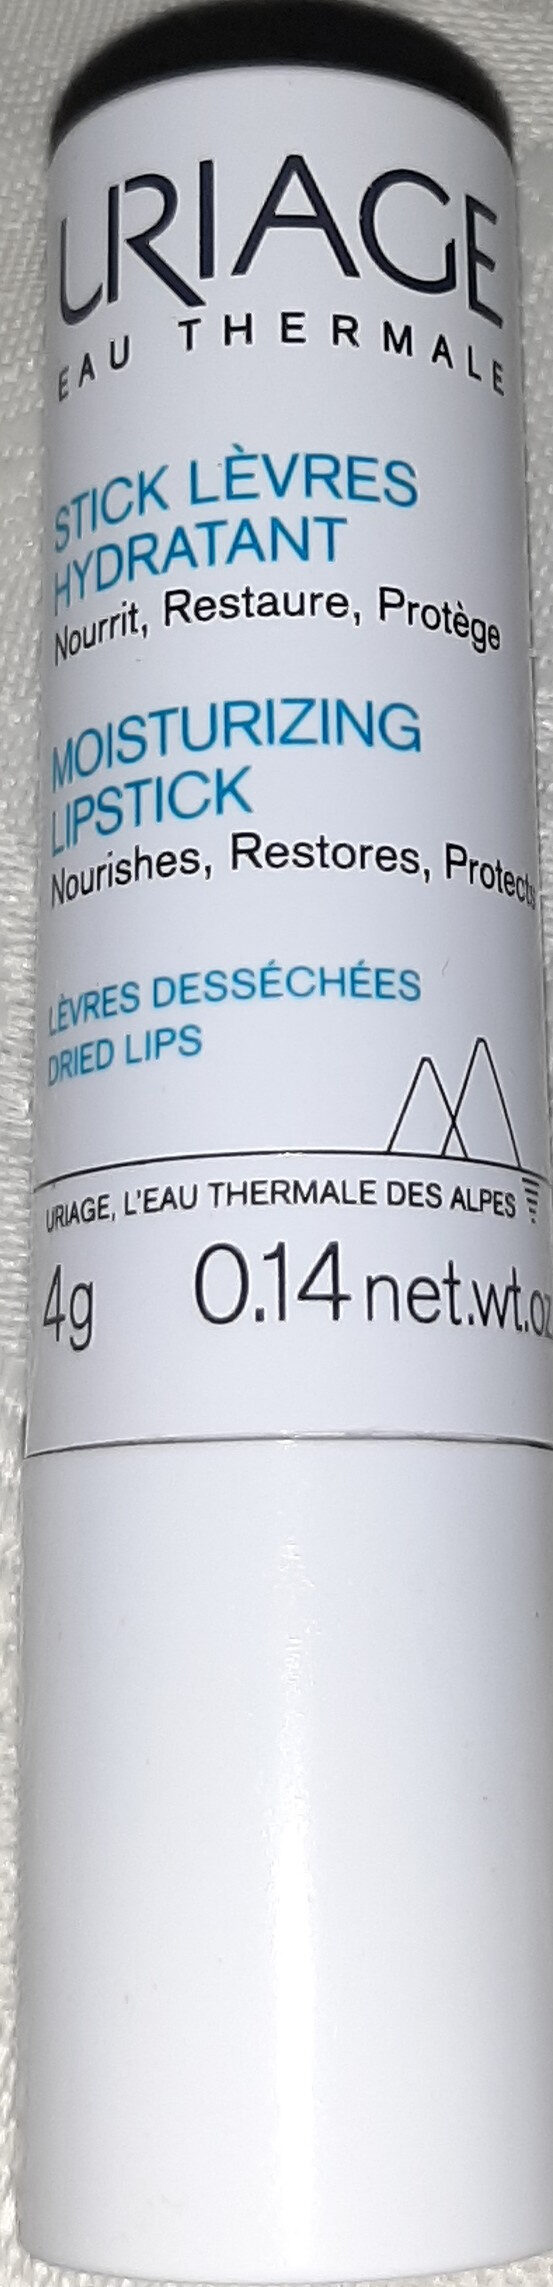 Uriage Stick Lèvres - Product - en